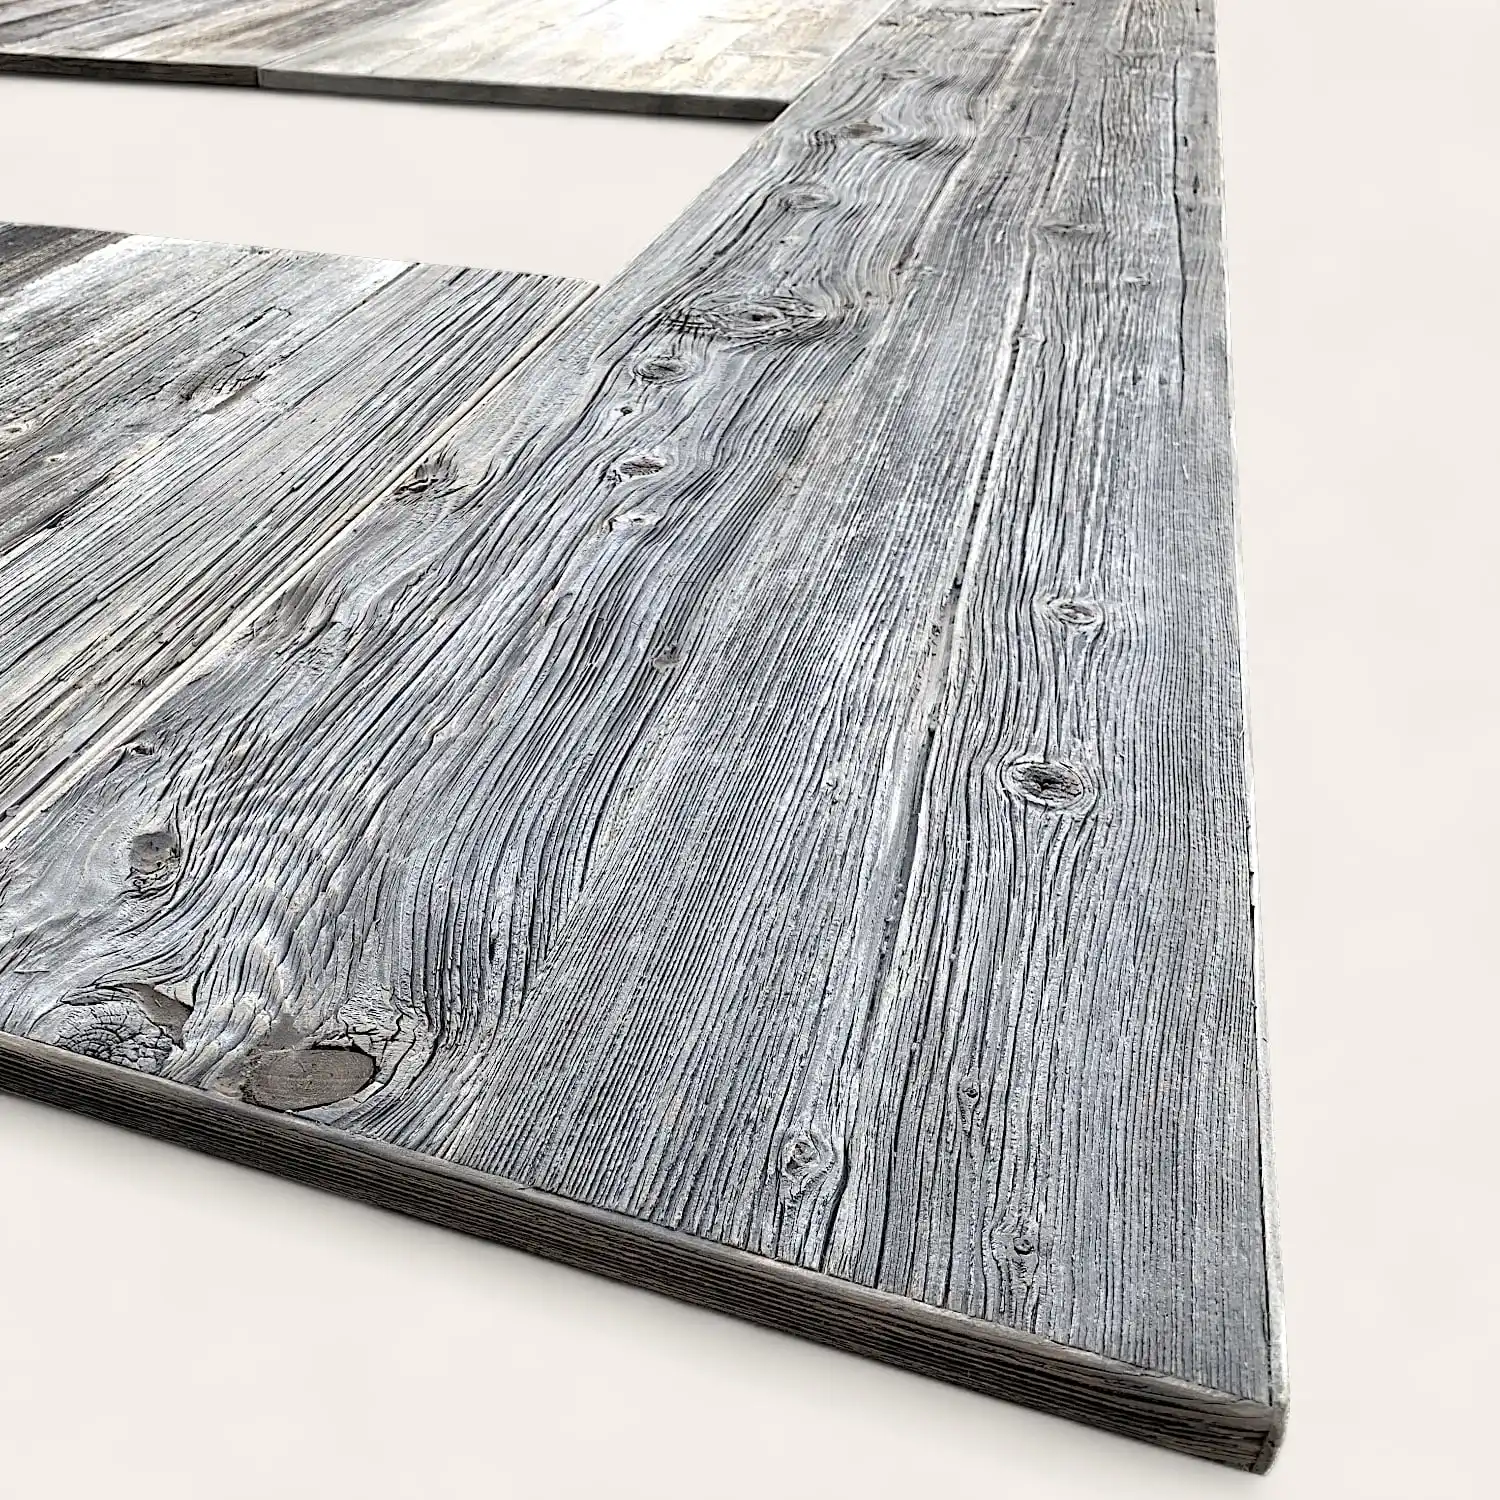  Gros plan d'une planche de bois gris texturé avec des motifs de grain de bois détaillés sur un panneau vieilli à 3 épaisseurs. 